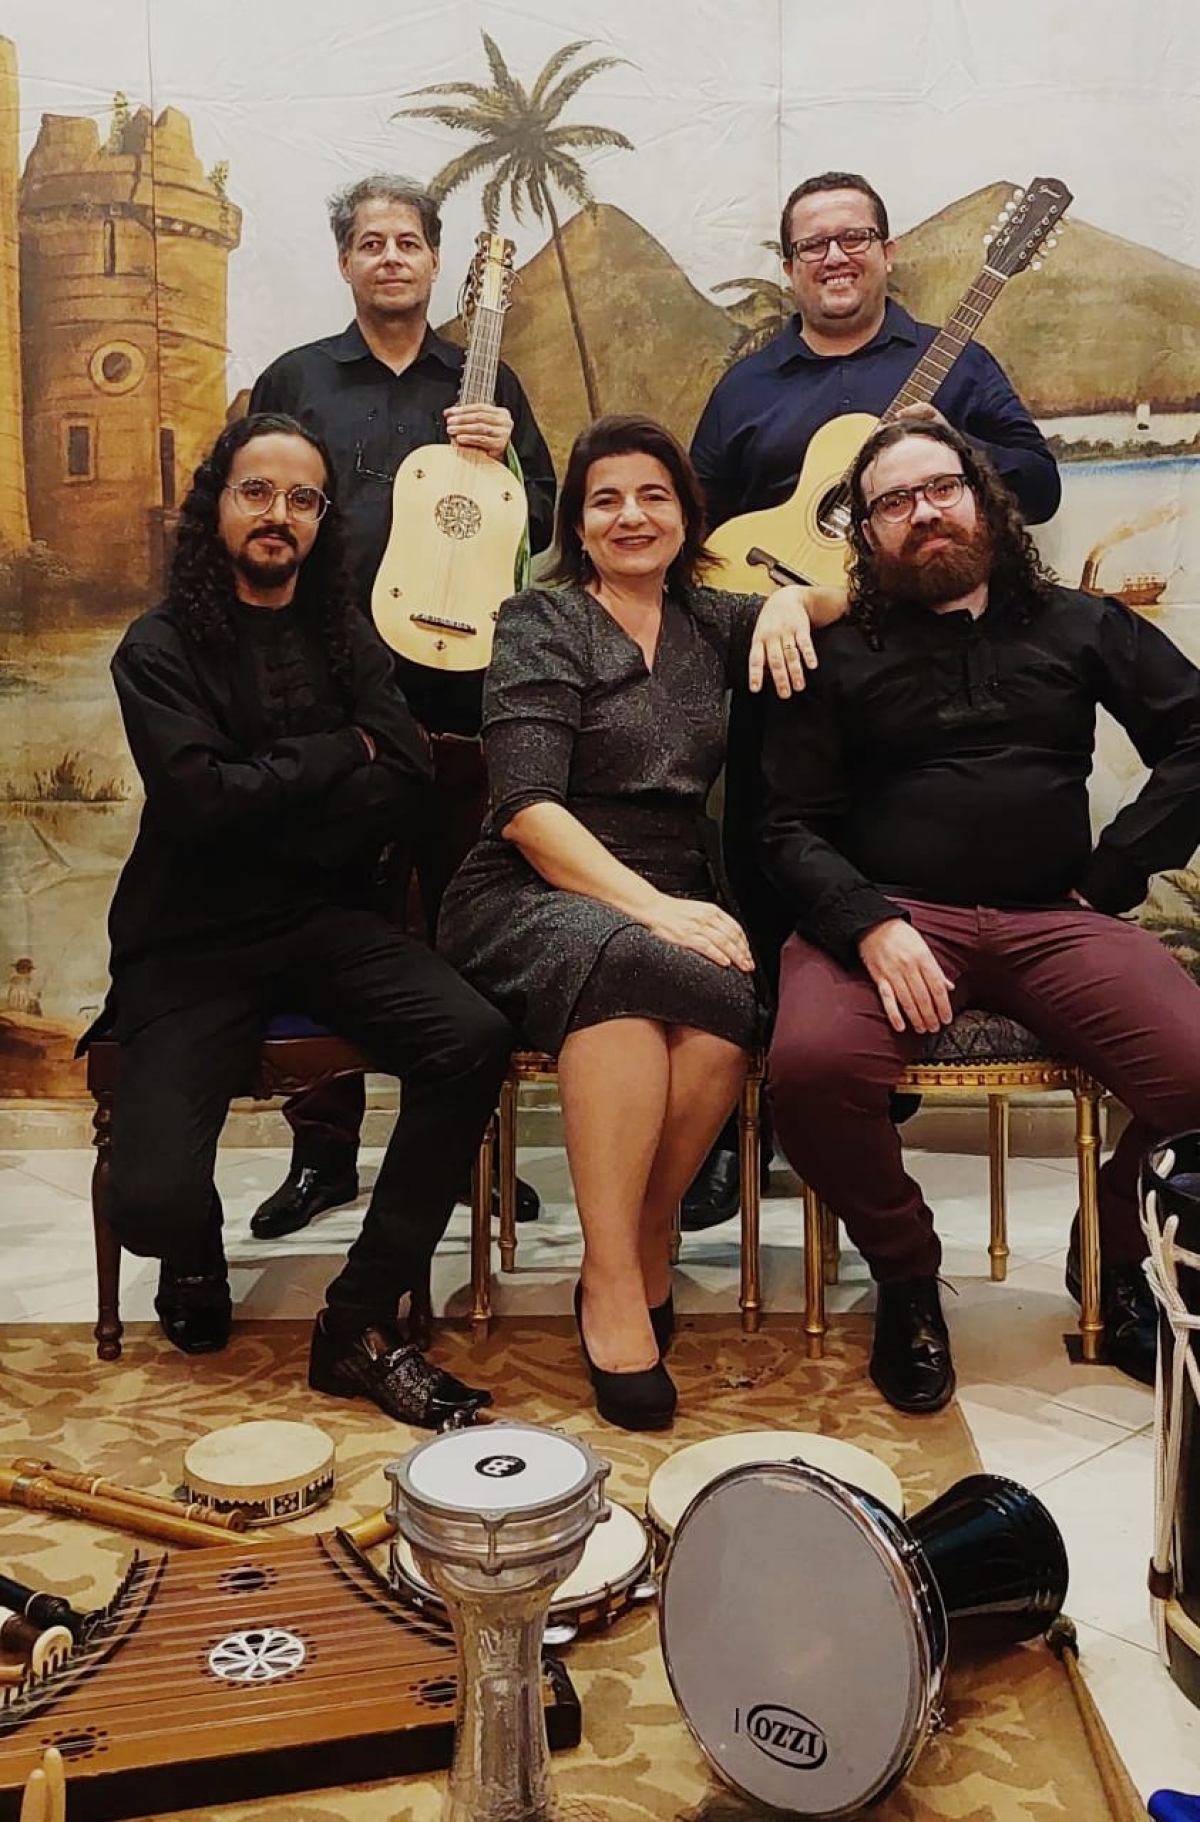 Música Antiga Renantique realiza concerto no Museu de Arte Sacra de São Cristóvão - Foto: Divulgação